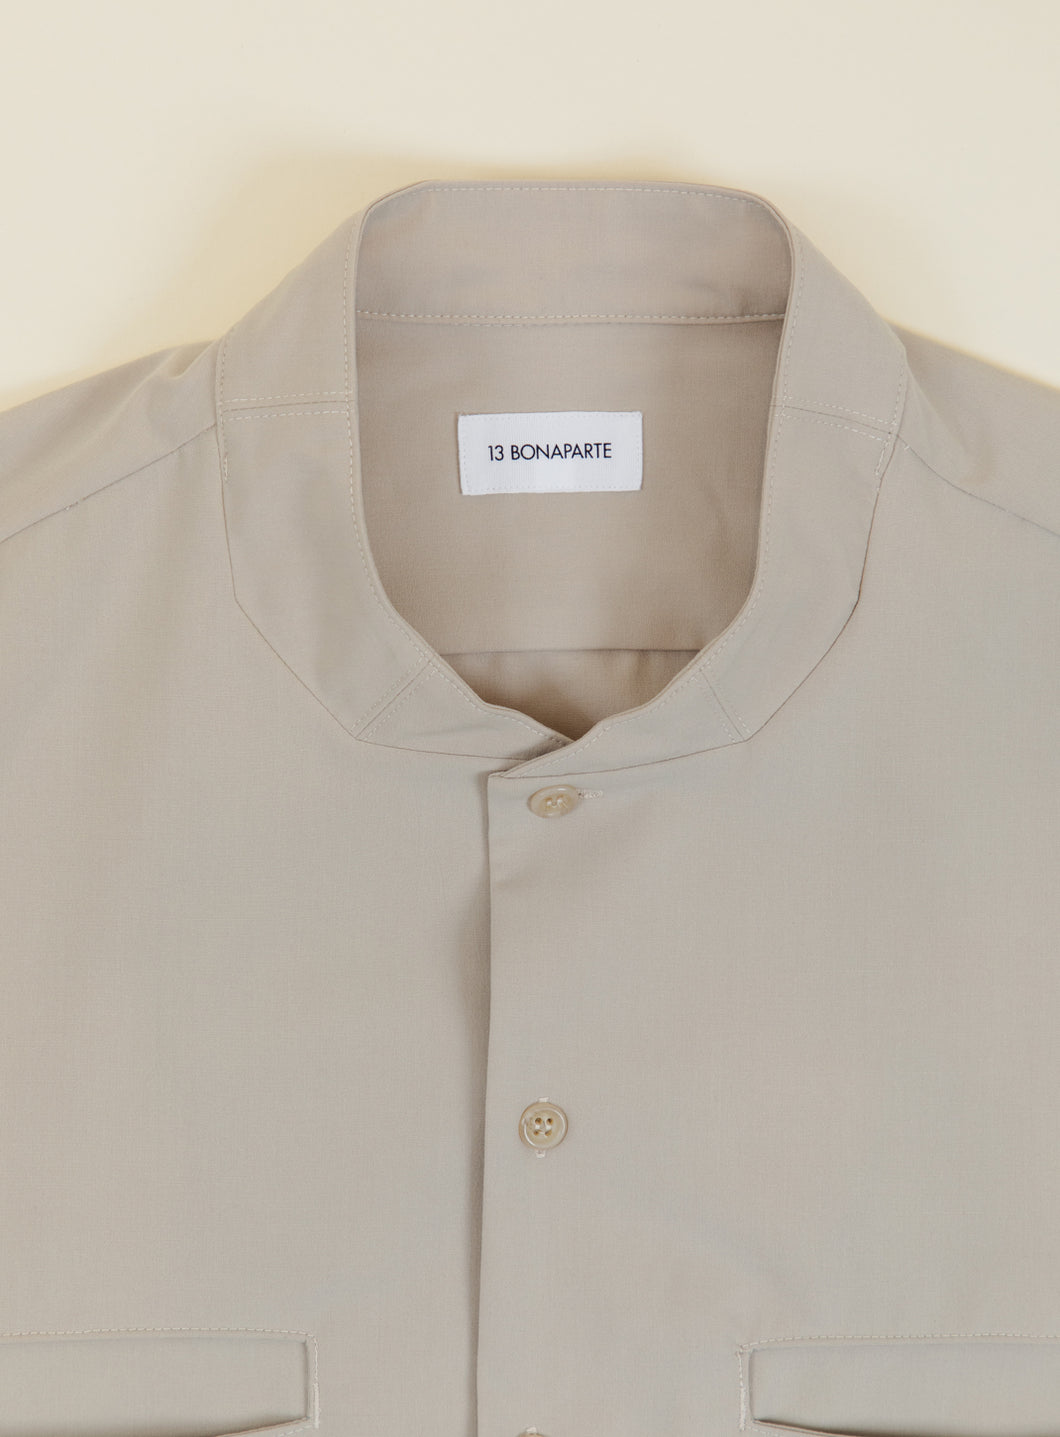 Murano Collar Overshirt in Ivory Serge